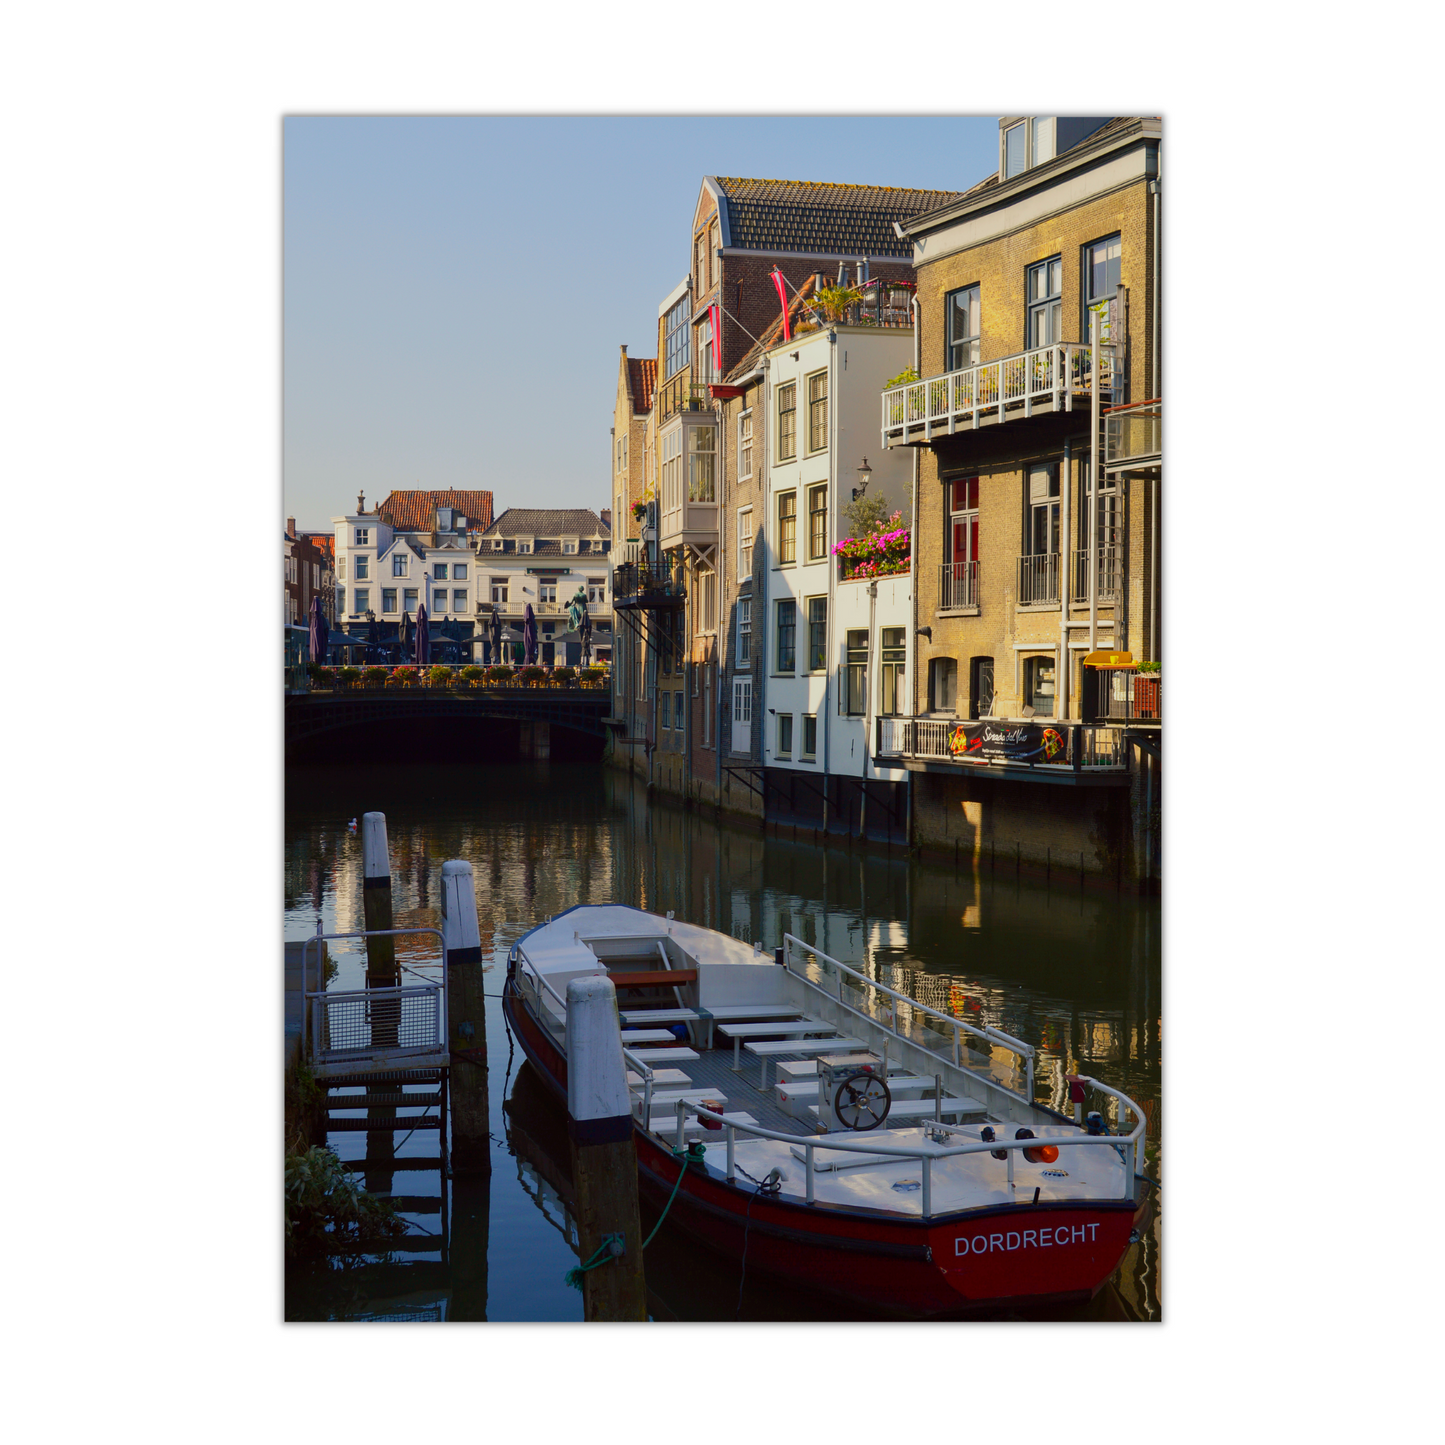 dordrecht ansichtkaarten grachten dordt 078 boot tourist toerist tour holland the netherlands nederland zuid holland